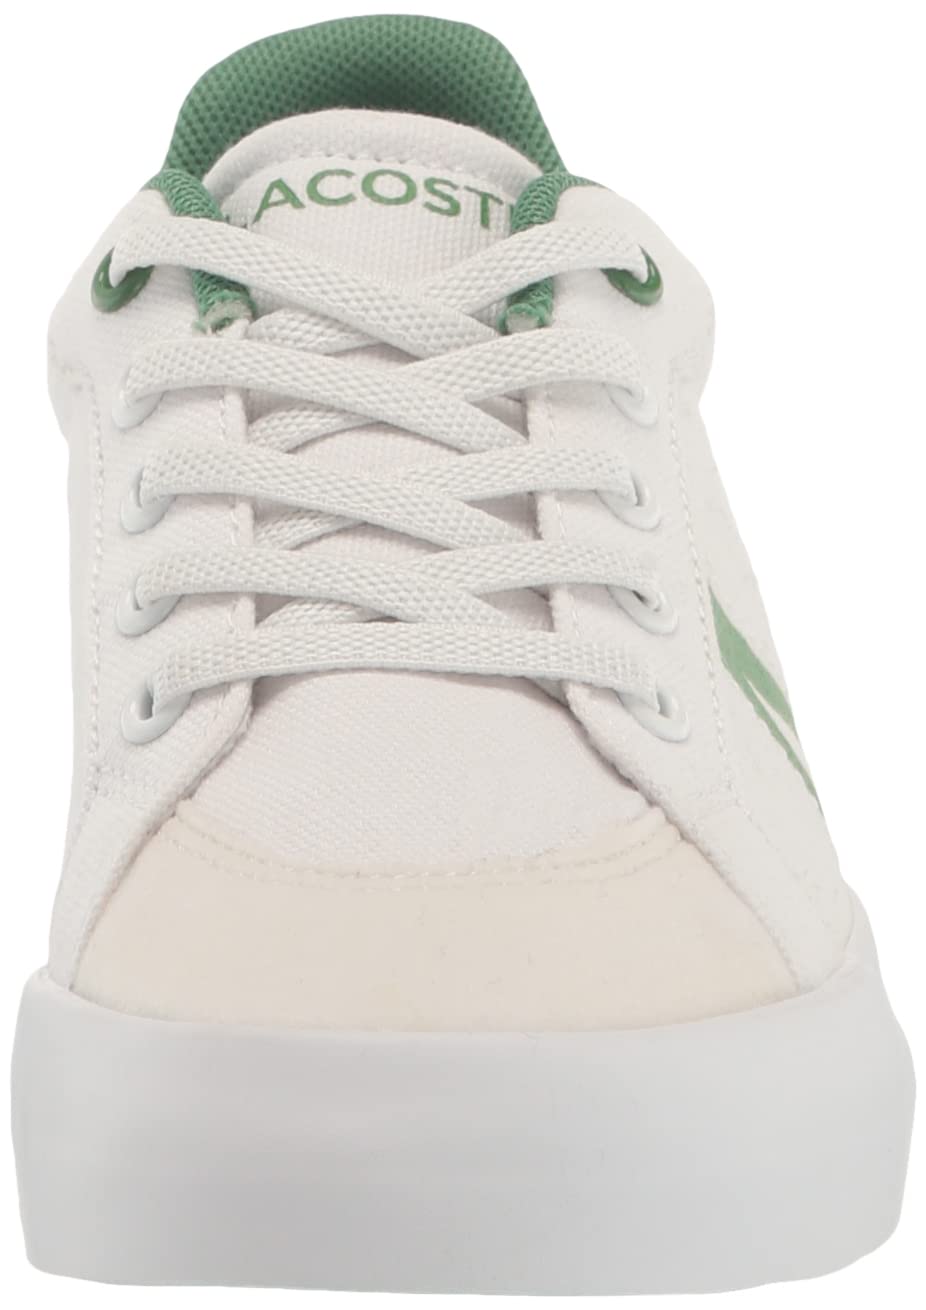 Lacoste Kids L004 Sneaker, White/Green, 7.5 US Unisex Toddler